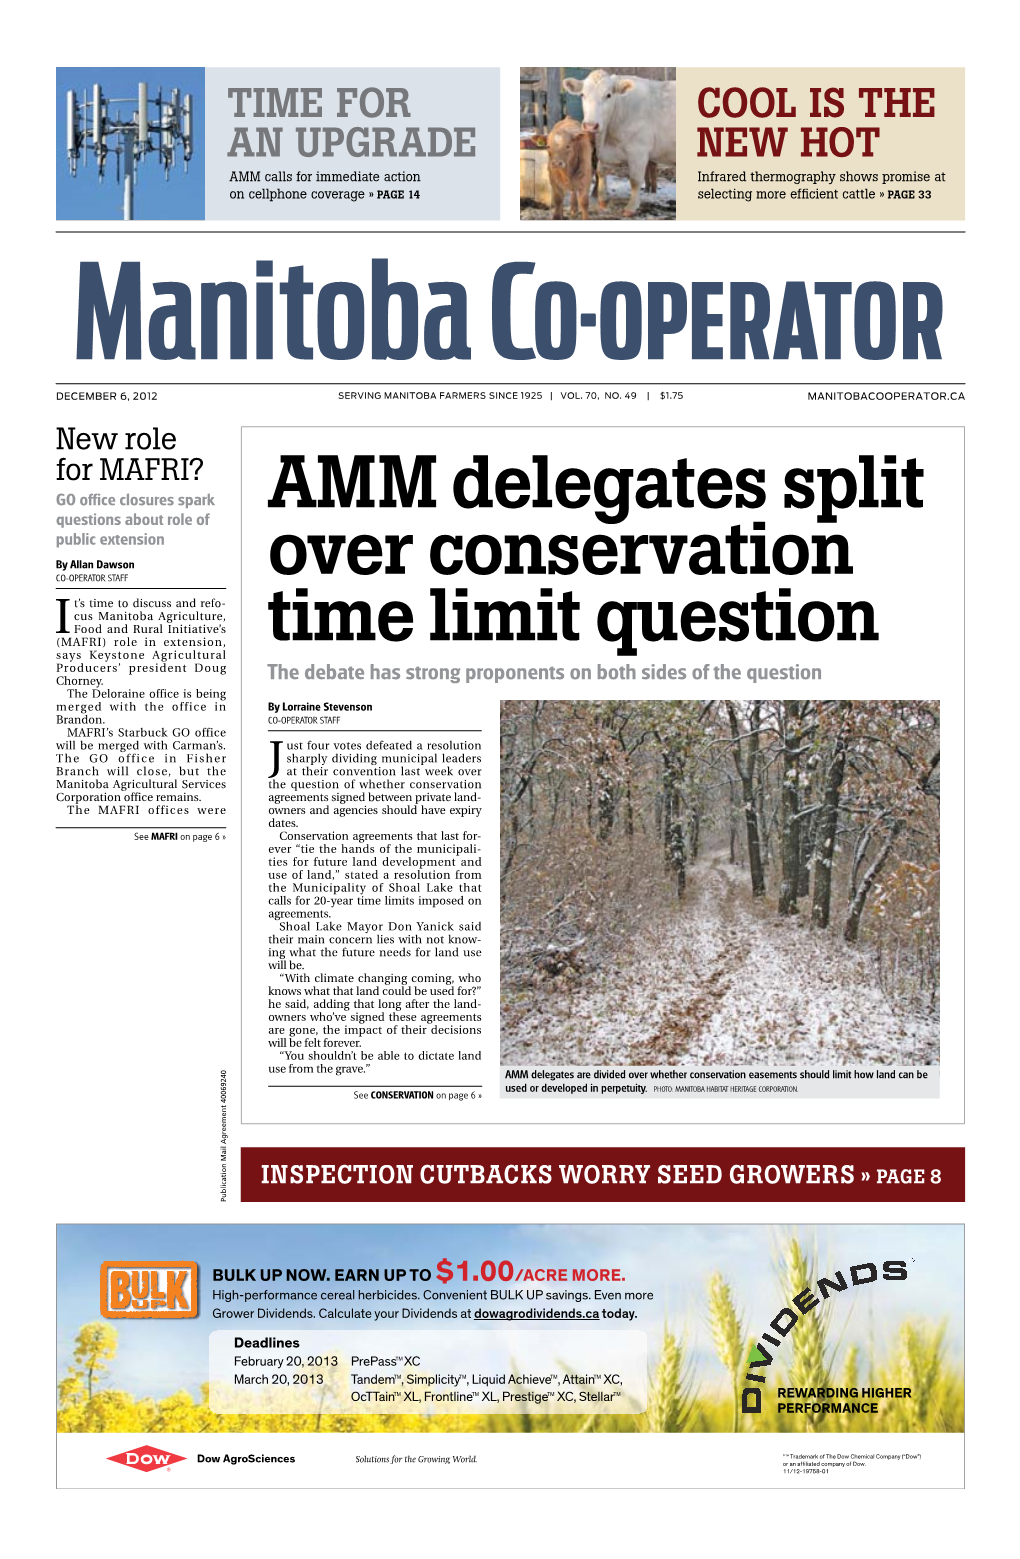 AMM Delegates Split Over Conservation Time Limit Question